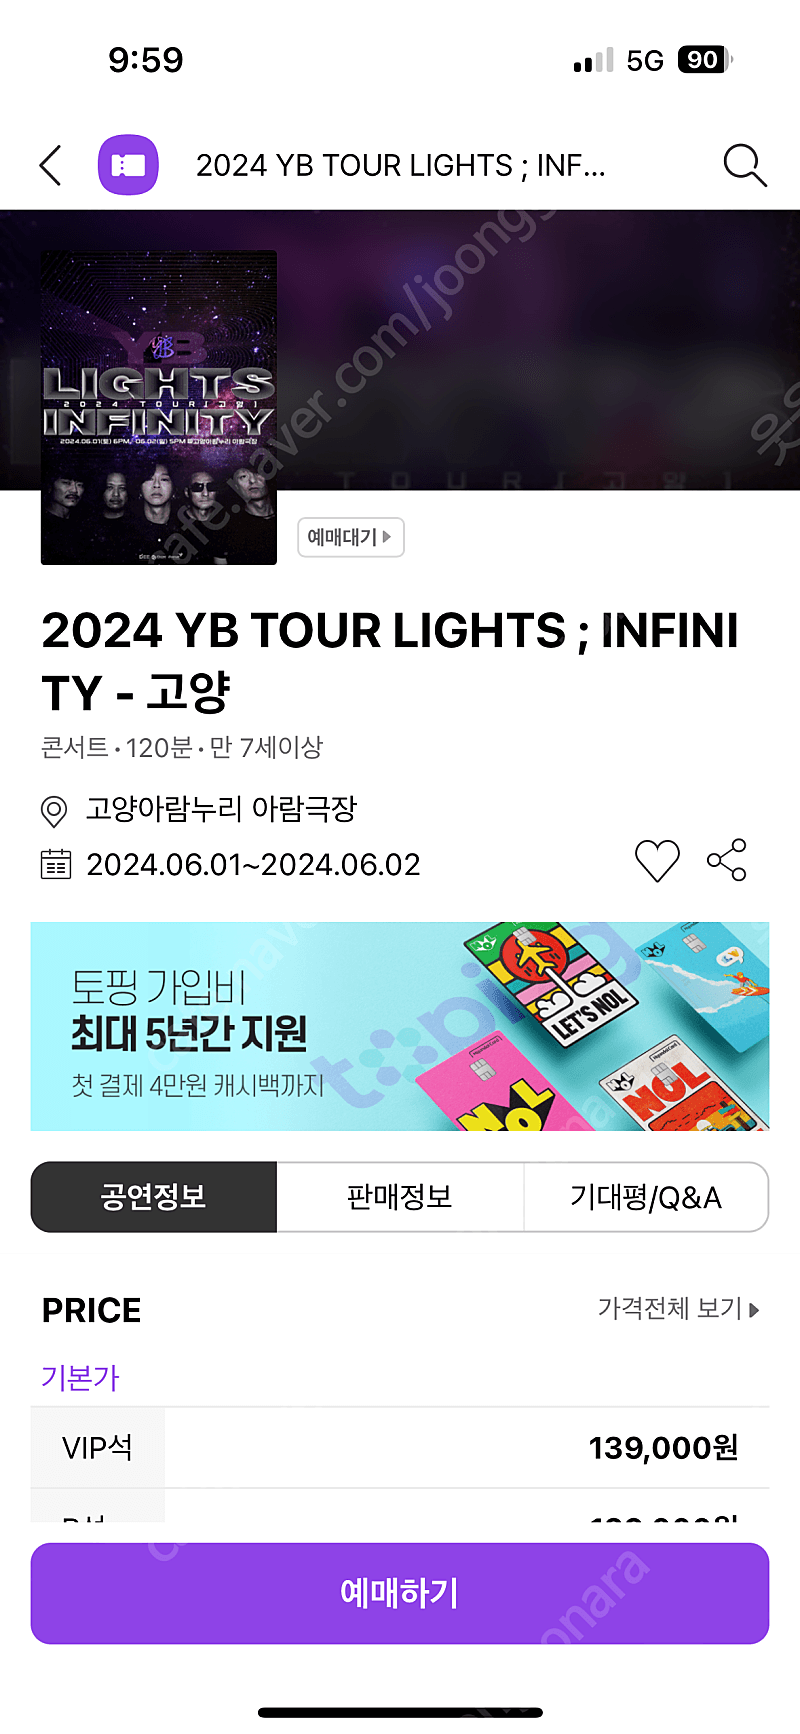 윤도현 밴드 고양 콘서트 VIP 티켓 2매